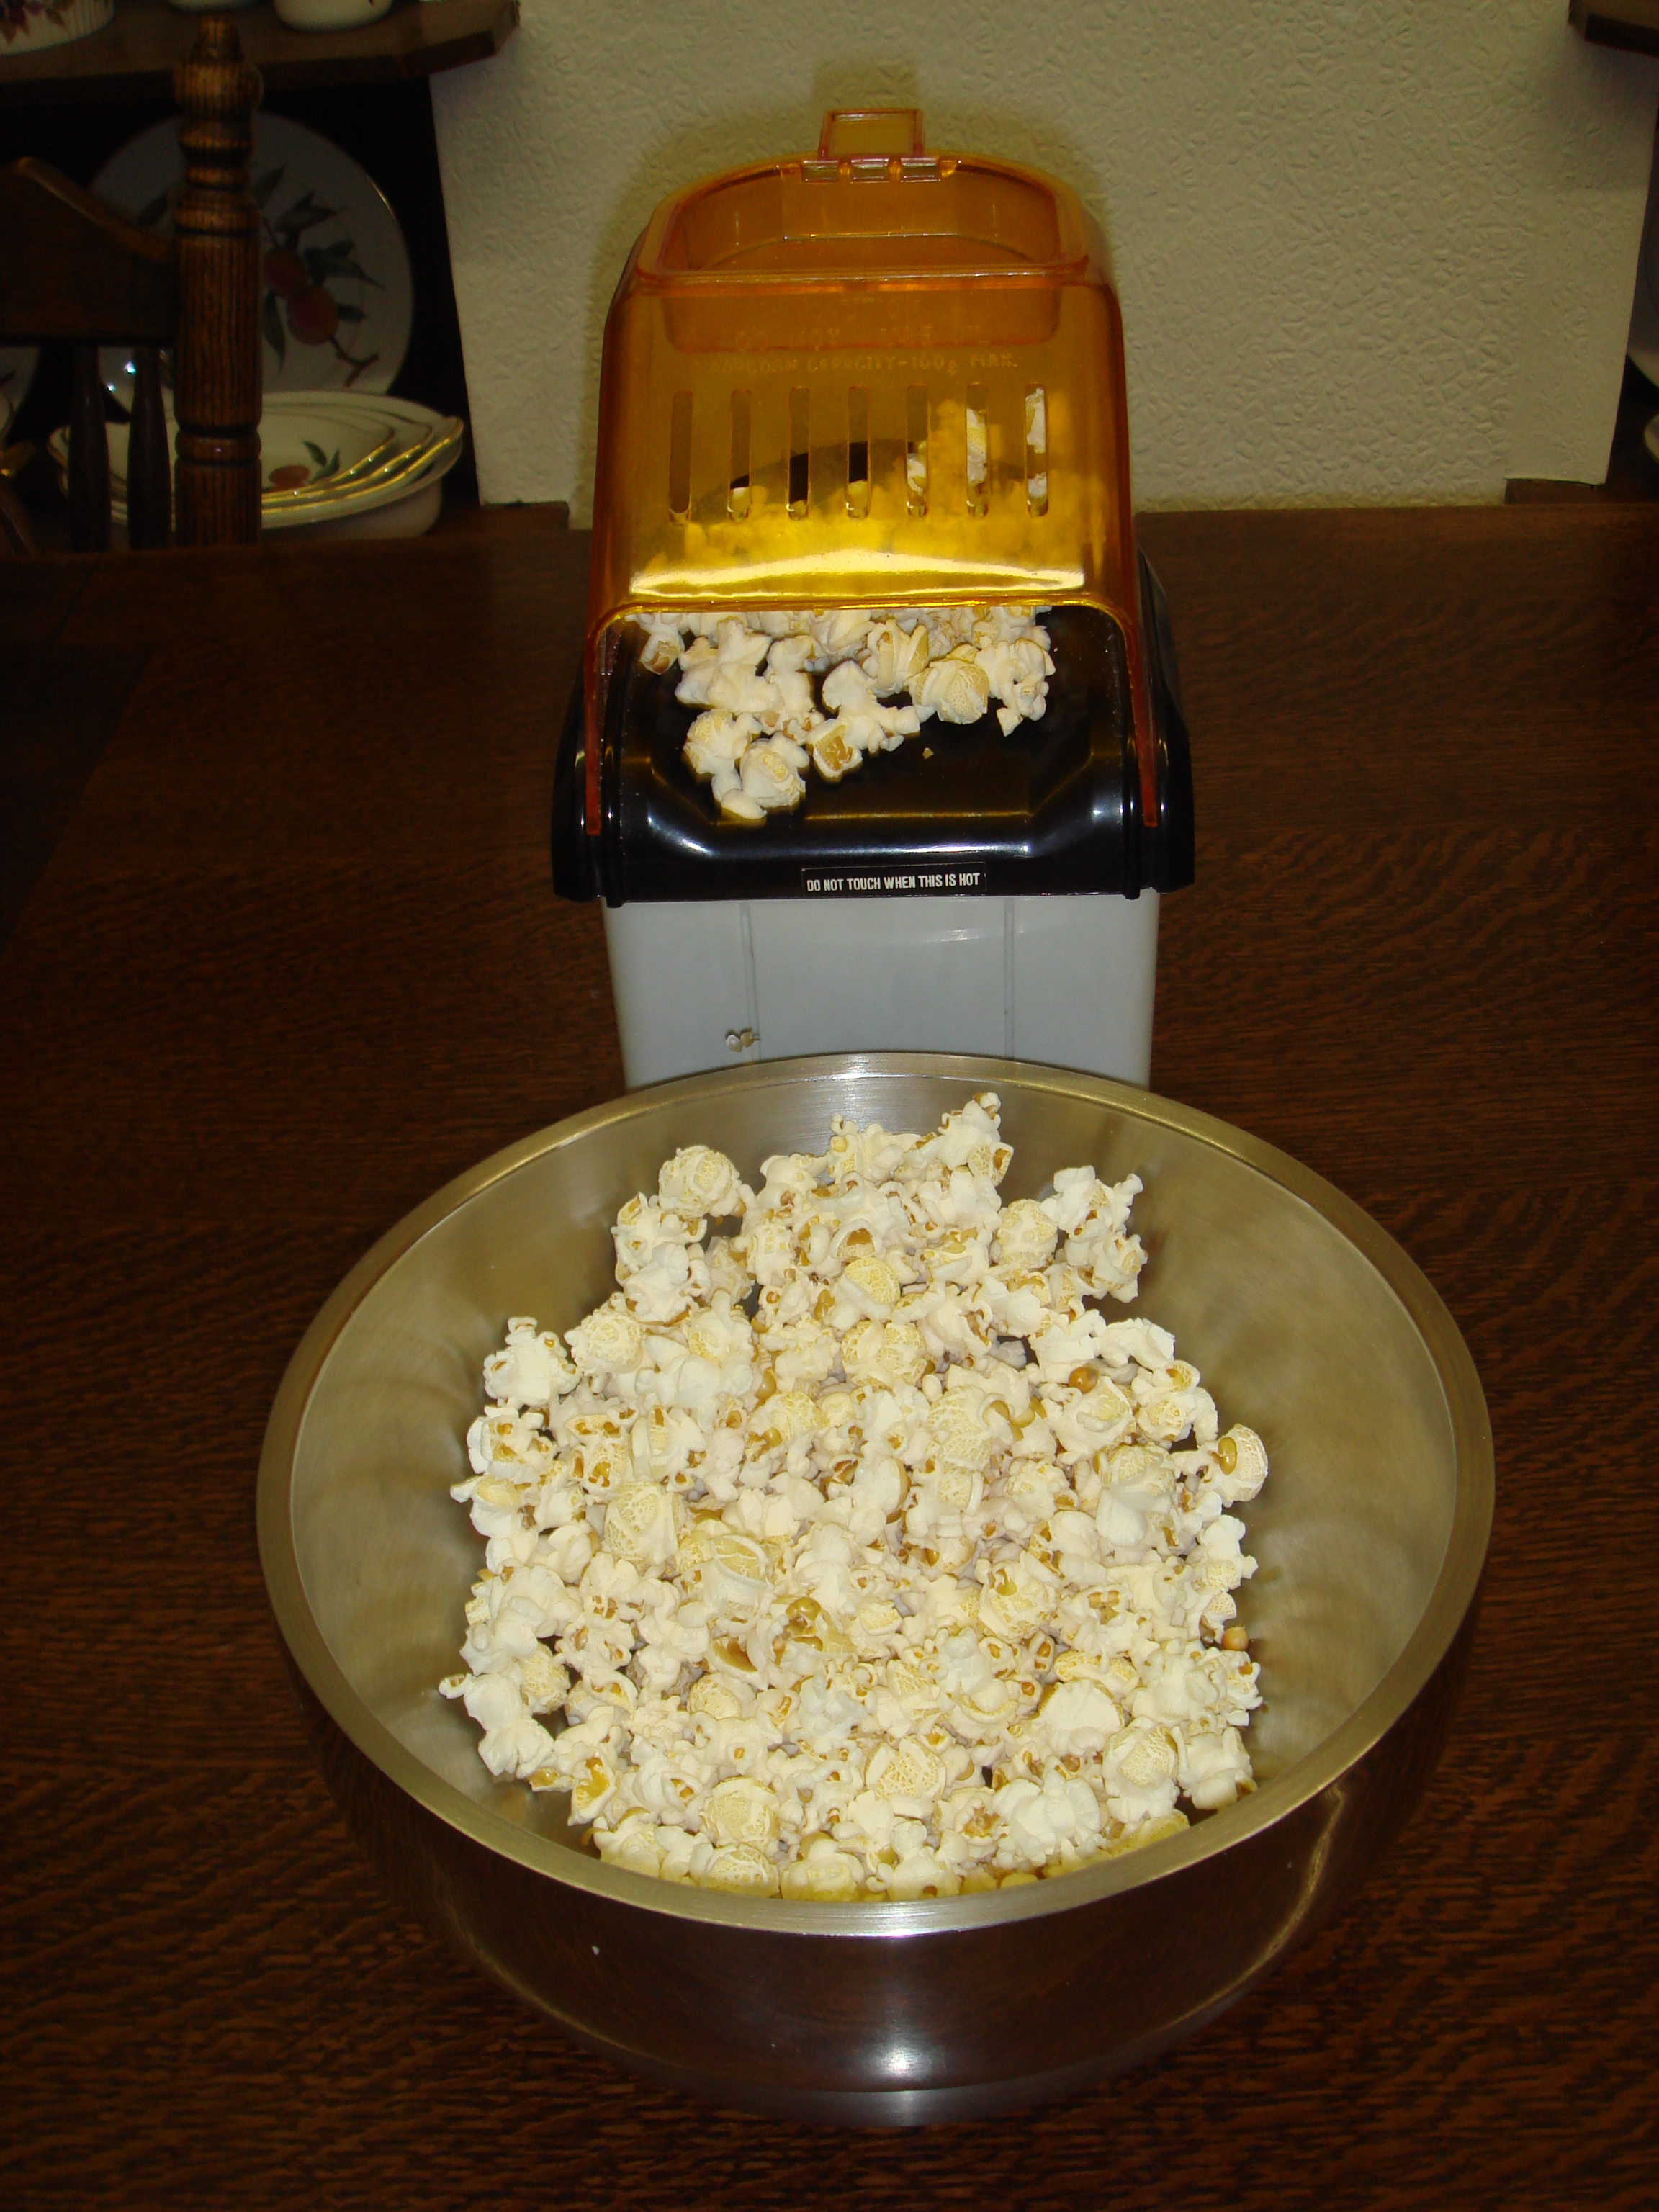 A popcorn maker.